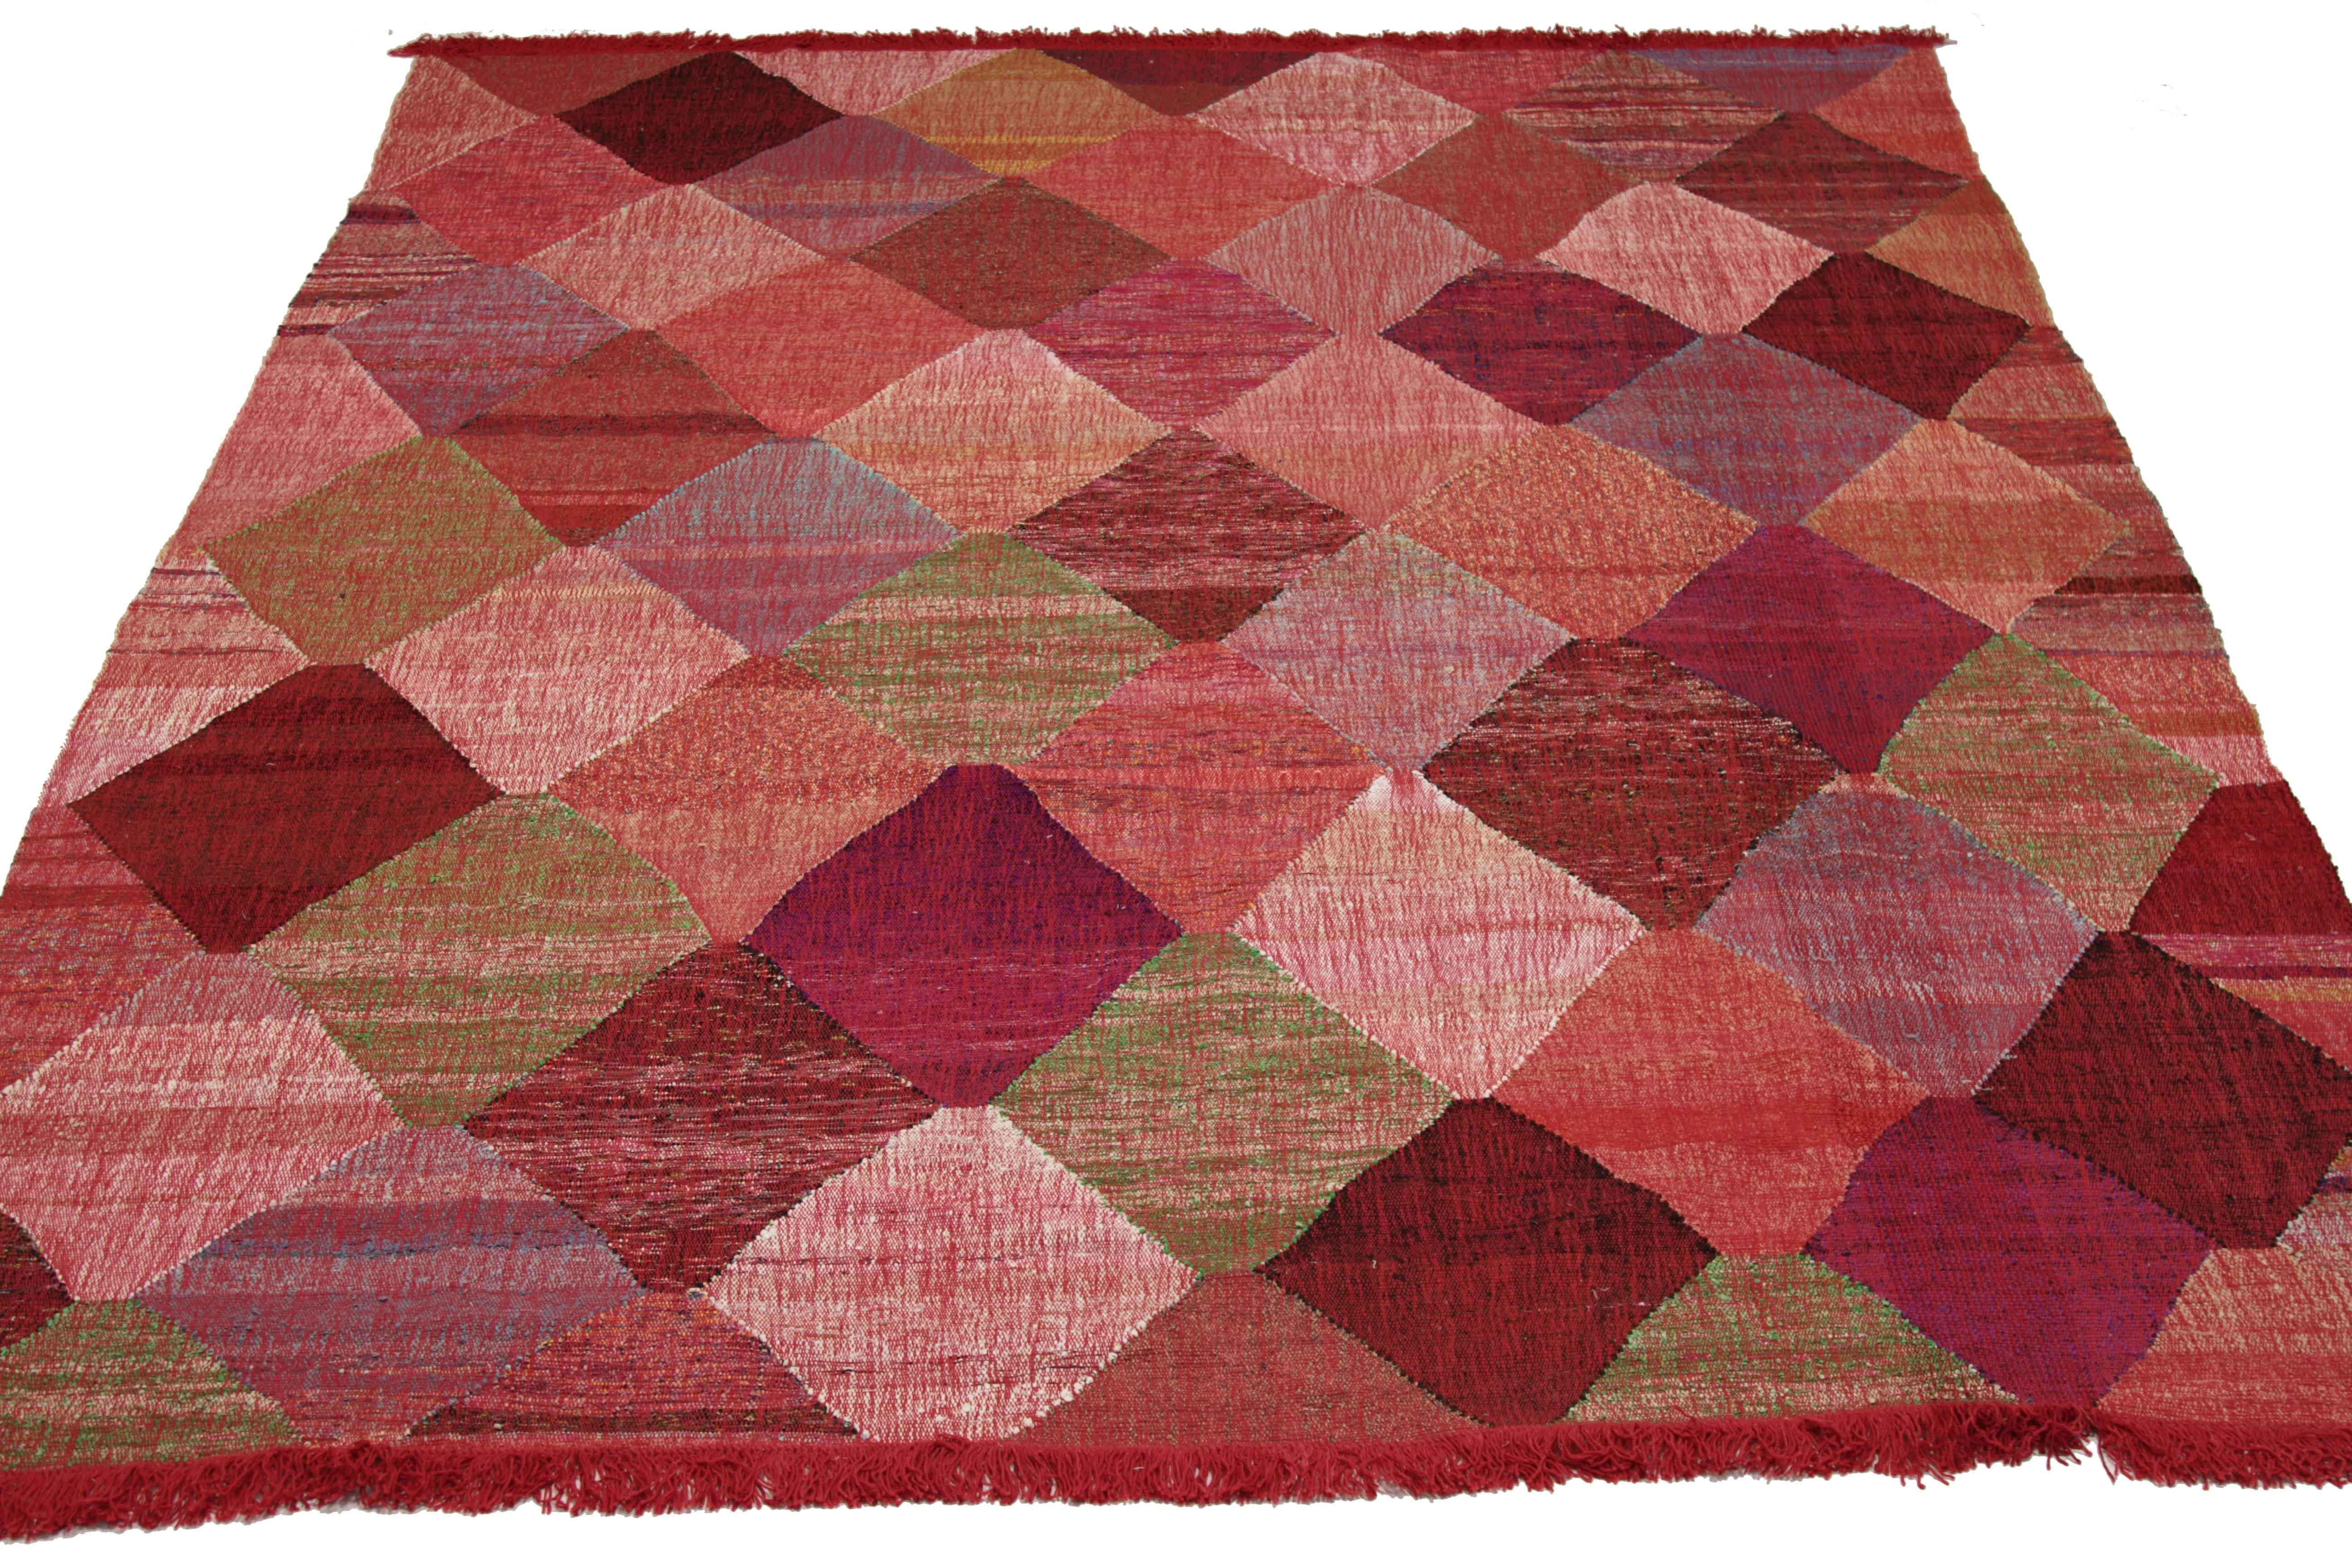 Nouveau tapis turc tissé à la main à partir de laine provenant d'anciens tapis fins. Il s'agit d'un tissage Kilim traditionnel présentant des motifs de diamants aux couleurs vives sur un fond ivoire. C'est une pièce étonnante à obtenir pour les